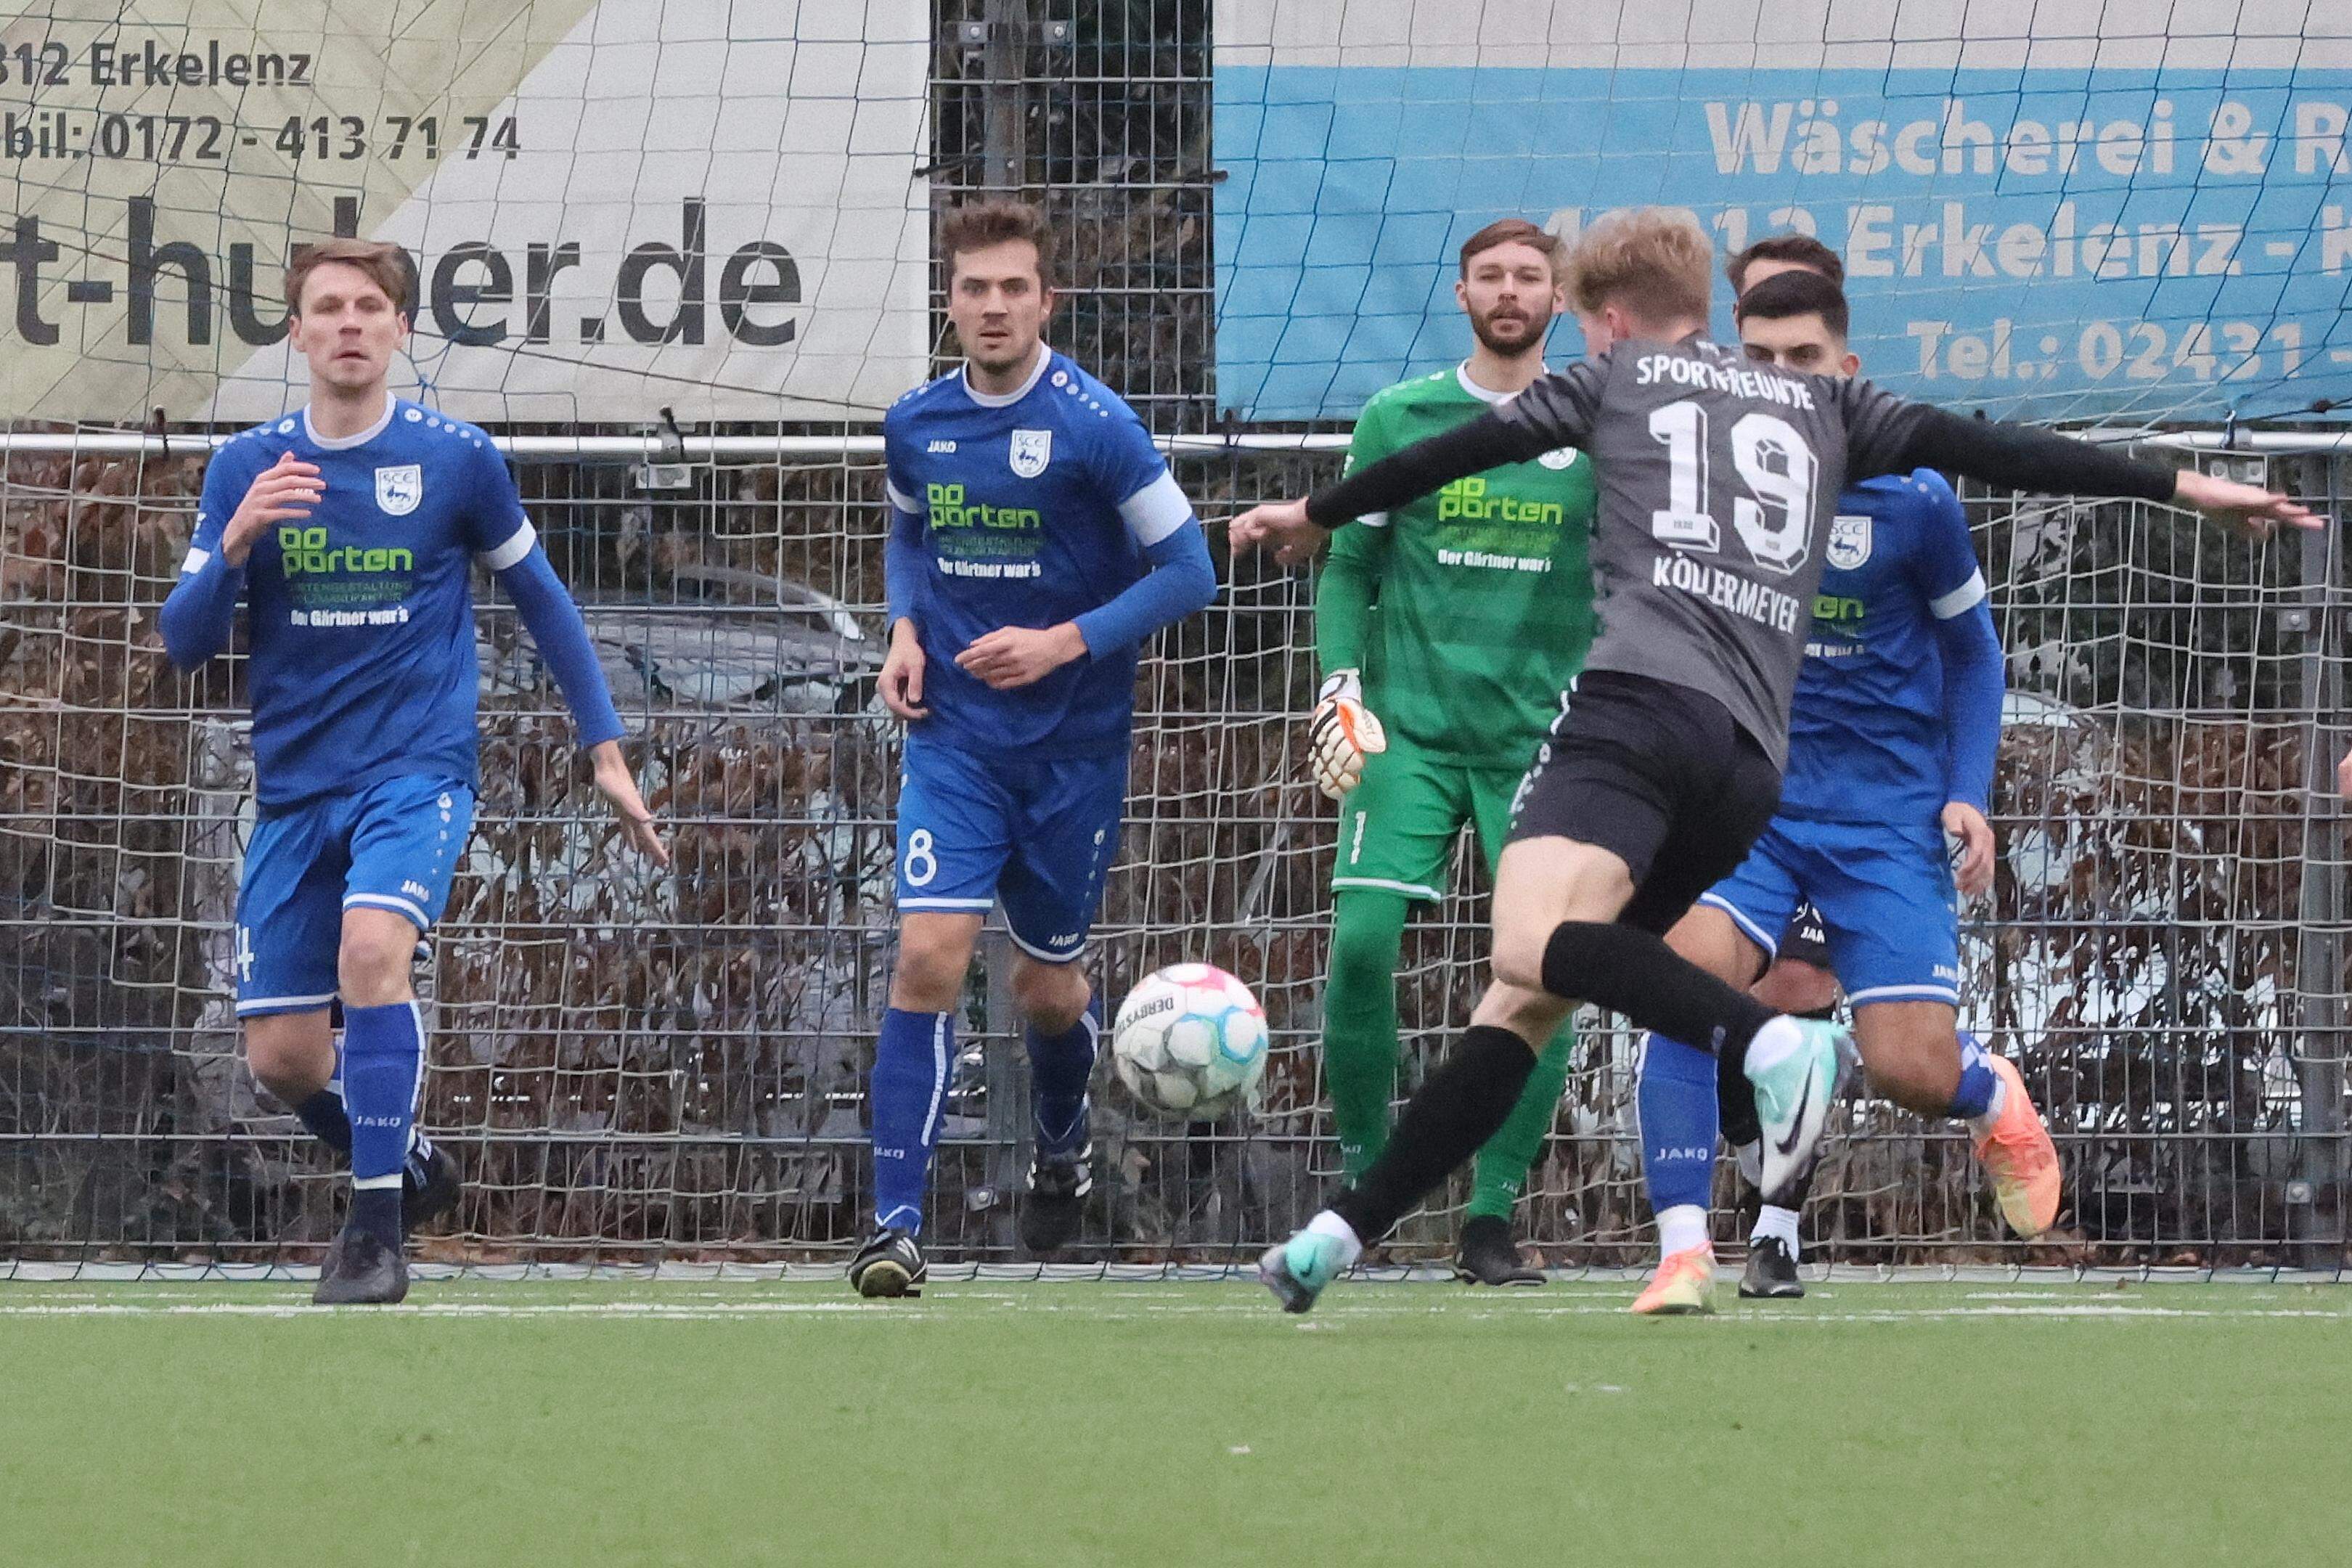 Für den SC Erkelenz (in Blau) geht es gegen Mariadorf um den Aufstieg. Uevekoven (in Schwarz) trifft in Haaren auf einen punktgleichen Gegner.